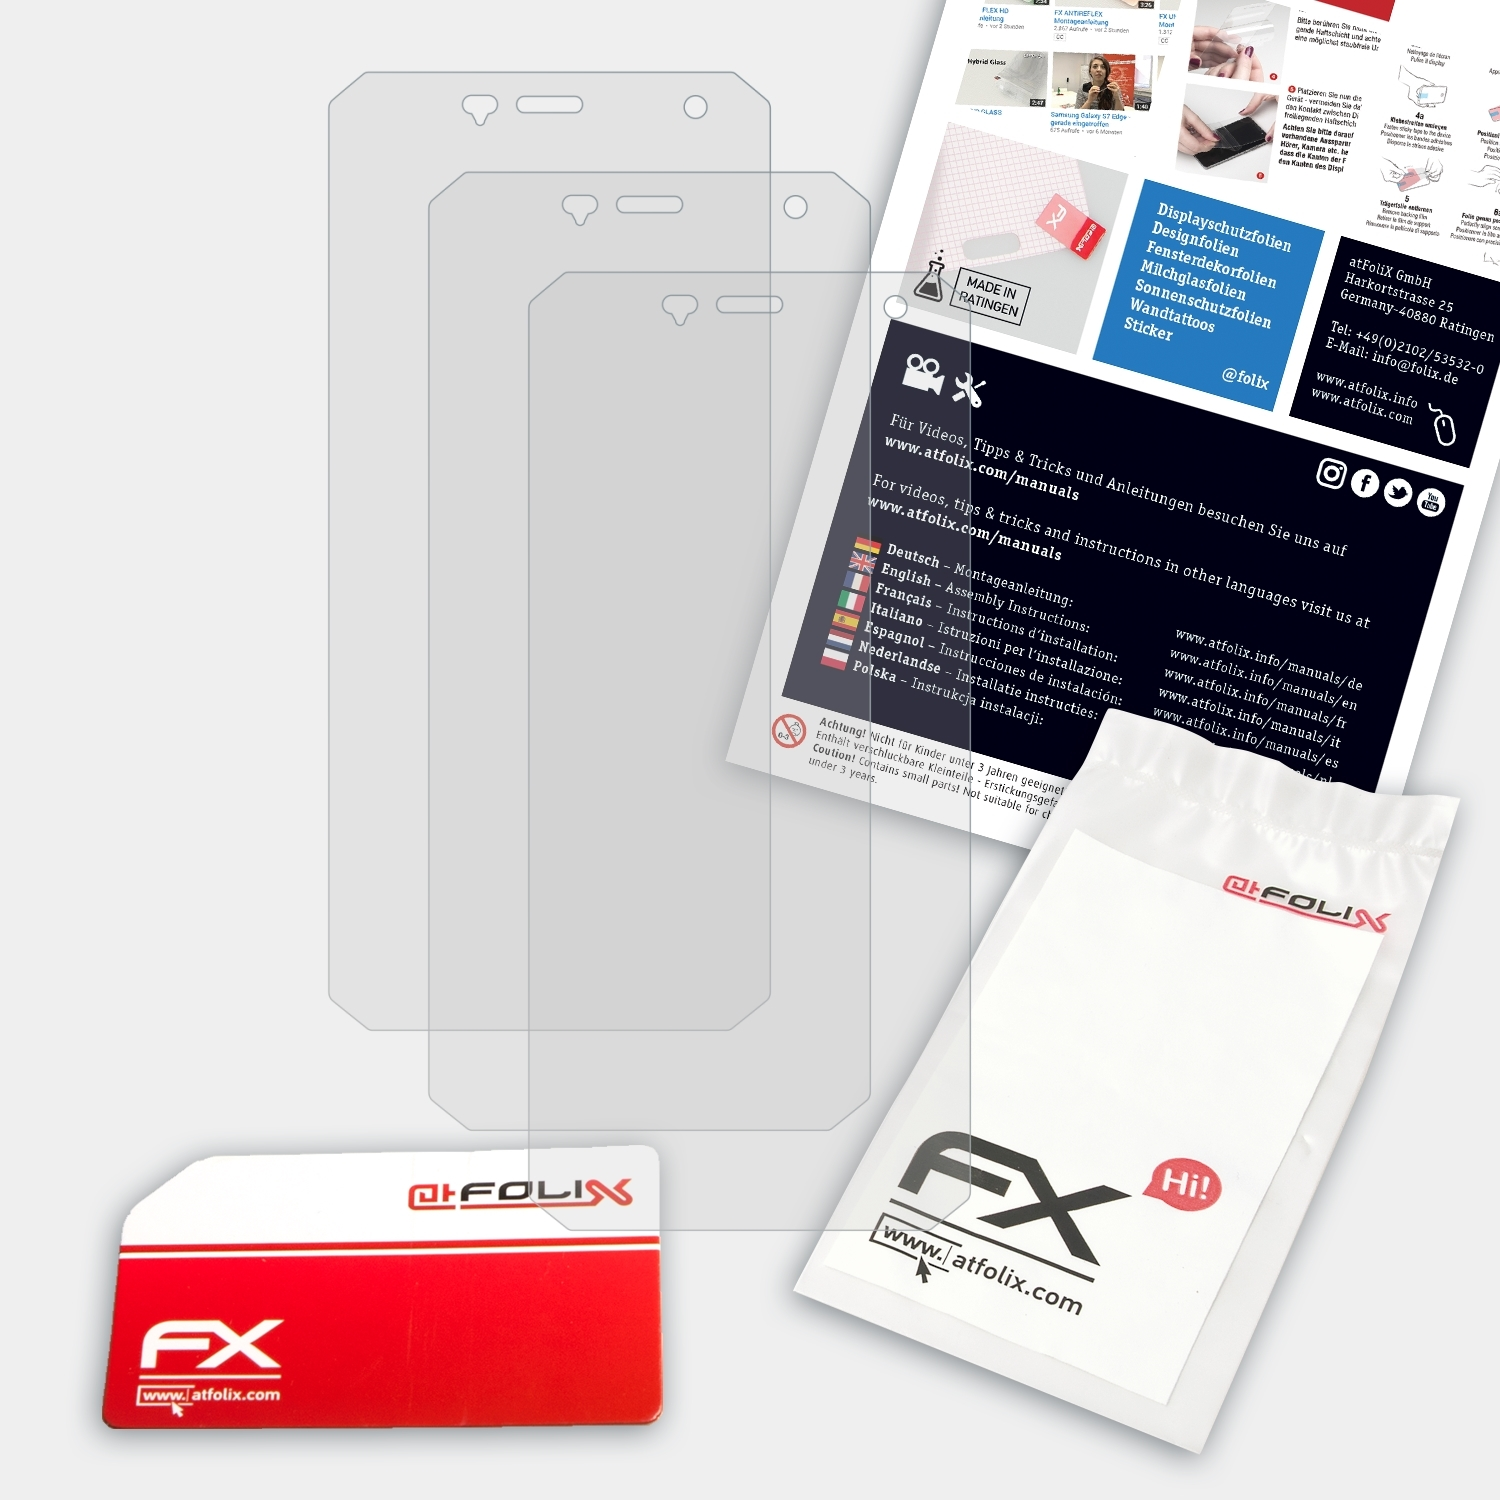 S50 3x Pro) Nomu FX-Antireflex Displayschutz(für ATFOLIX